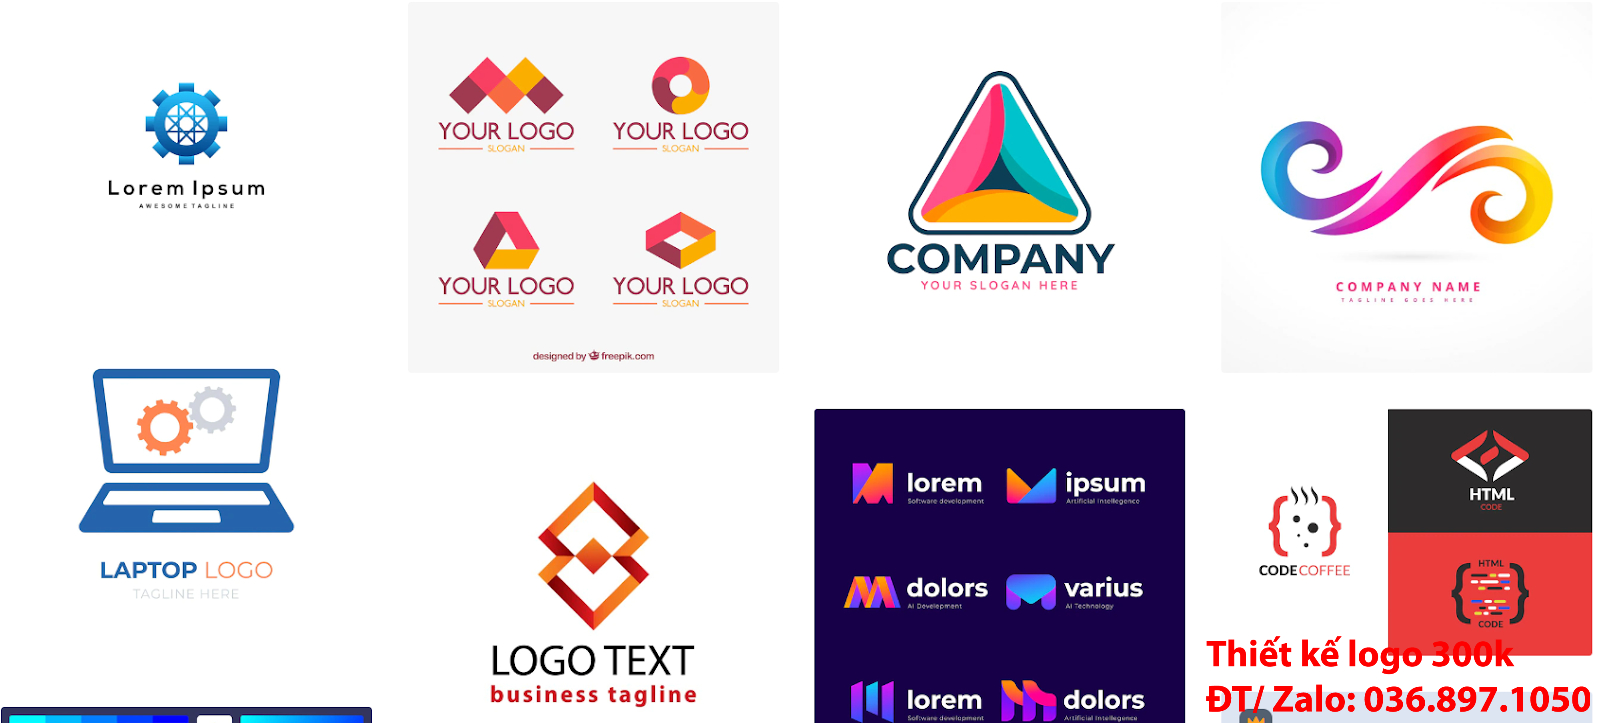 Mẫu logo công ty công nghệ đơn giản tinh tế giá rẻ 300k đẹp chất lượng